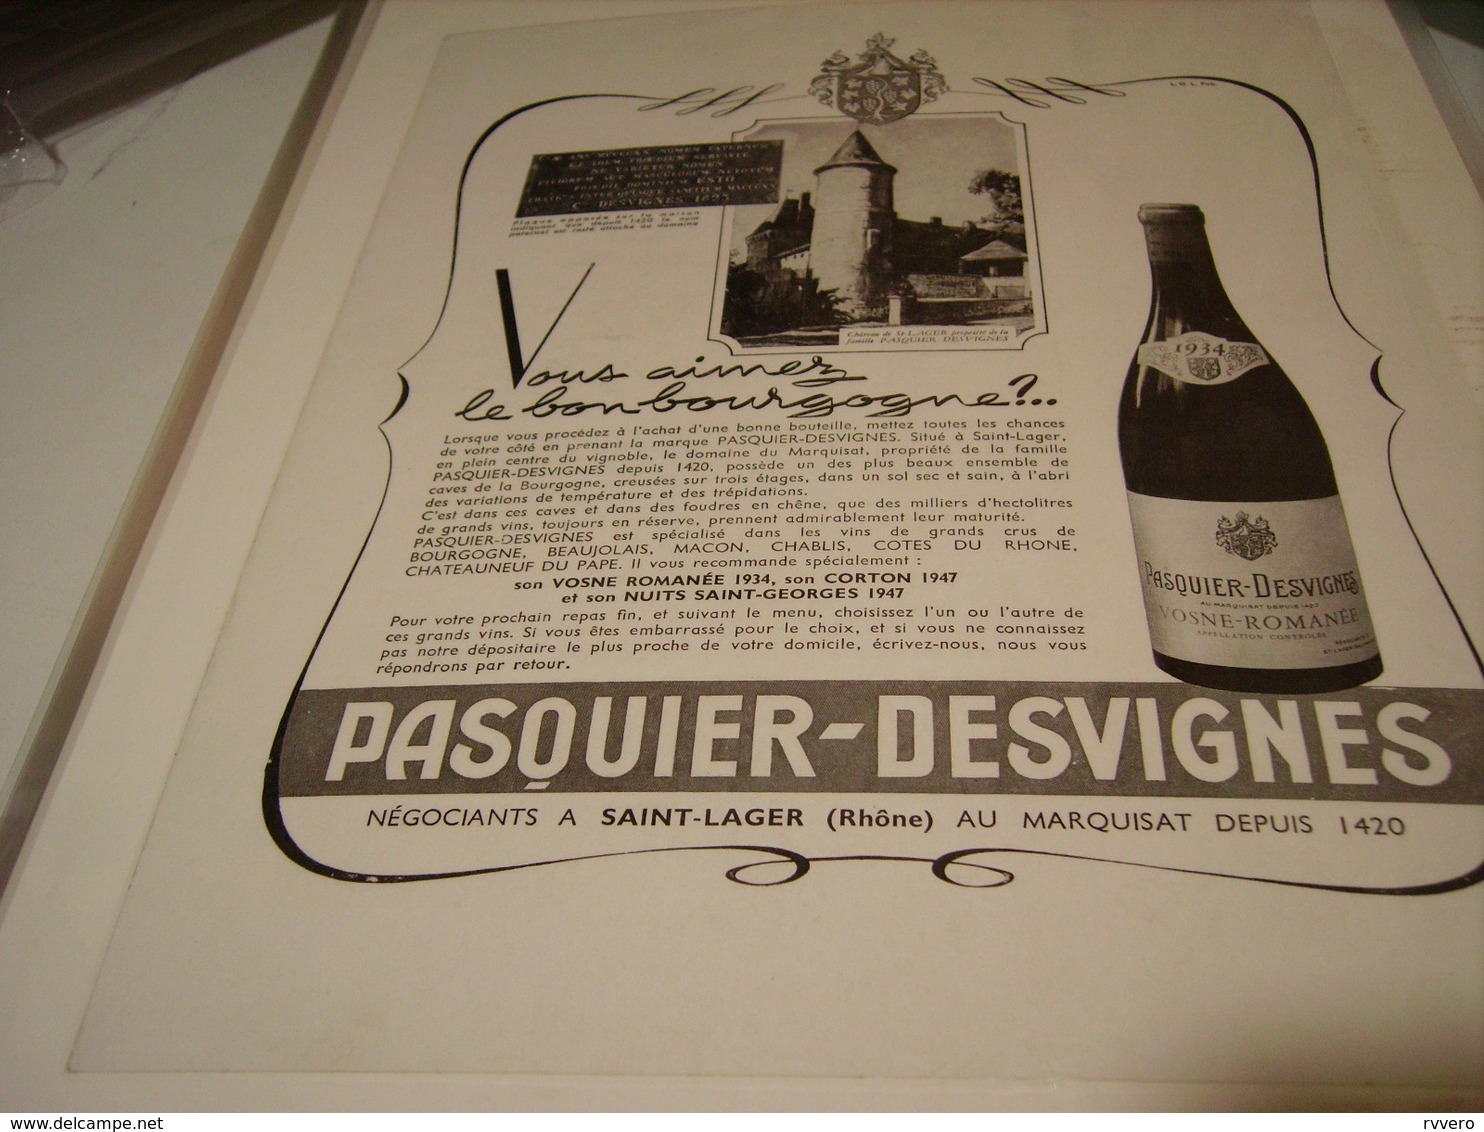 ANCIENNE PUBLICITE VIN BOURGOGNE DE PASQUIER DESVIGNES 1950 - Alcools